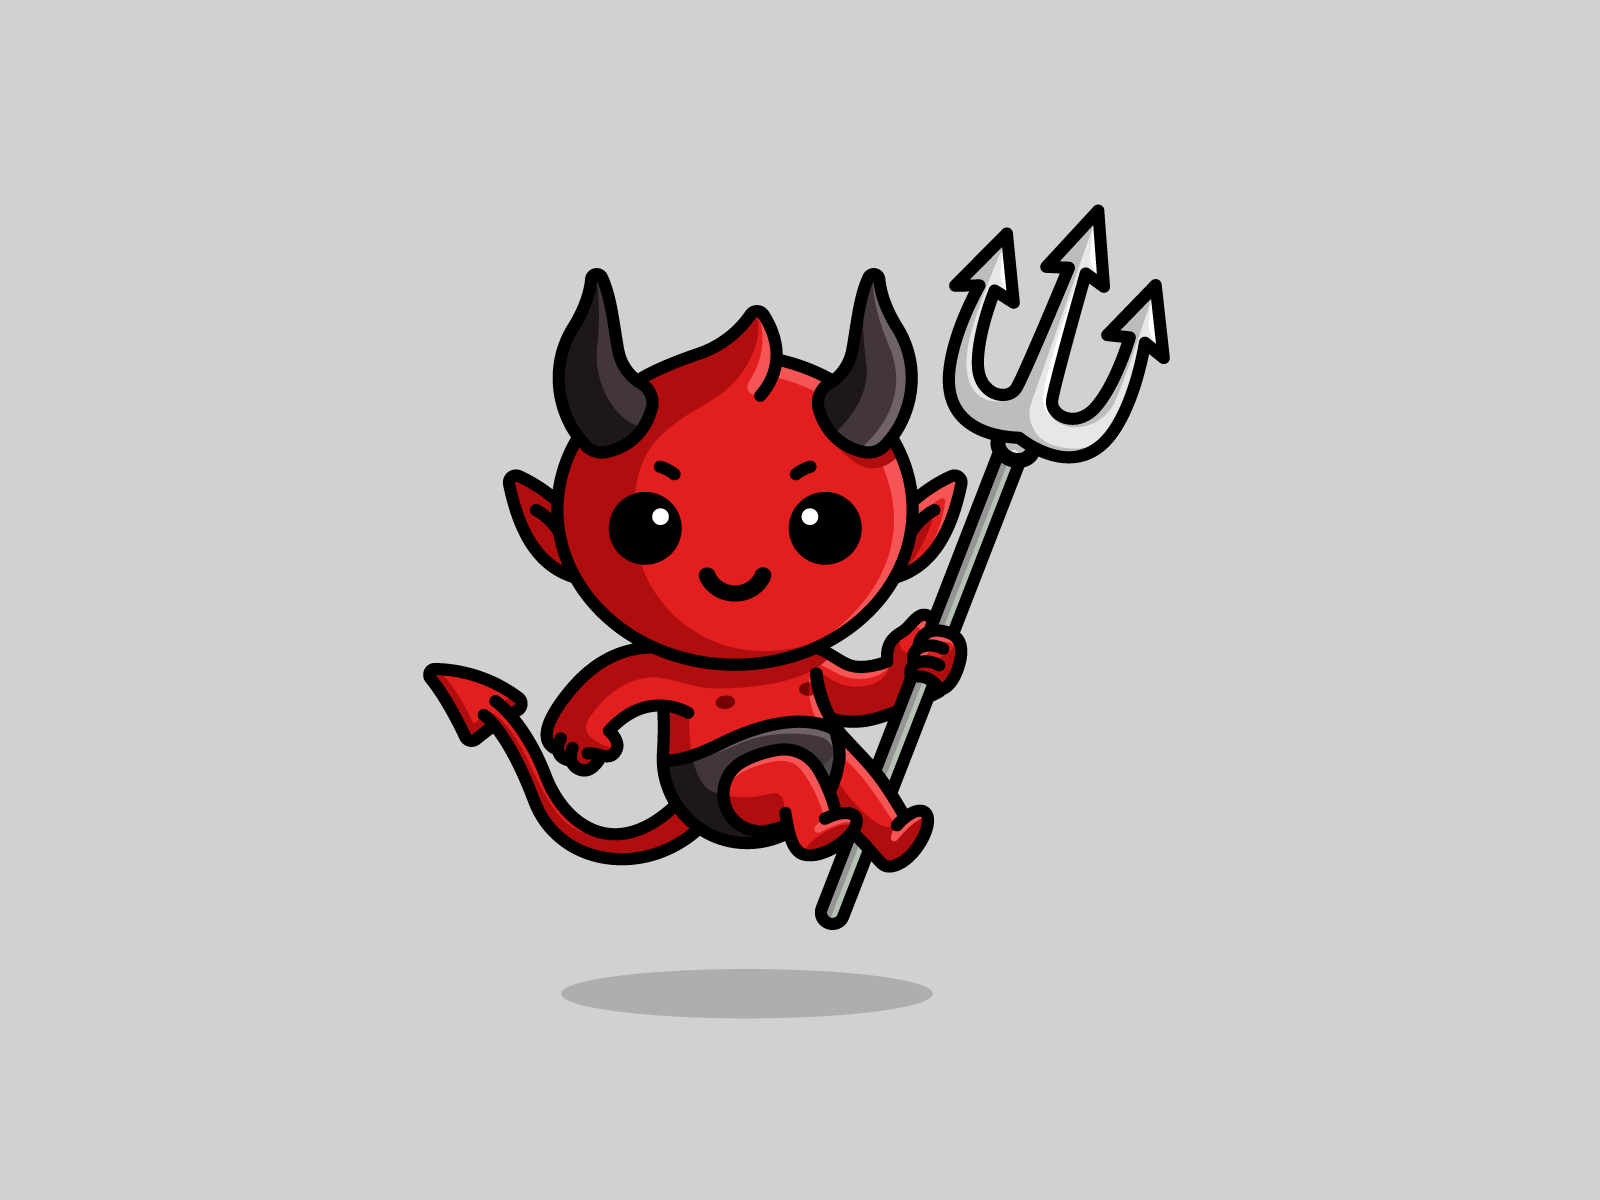 Devil's - simple logo by Luke Deft on Dribbble